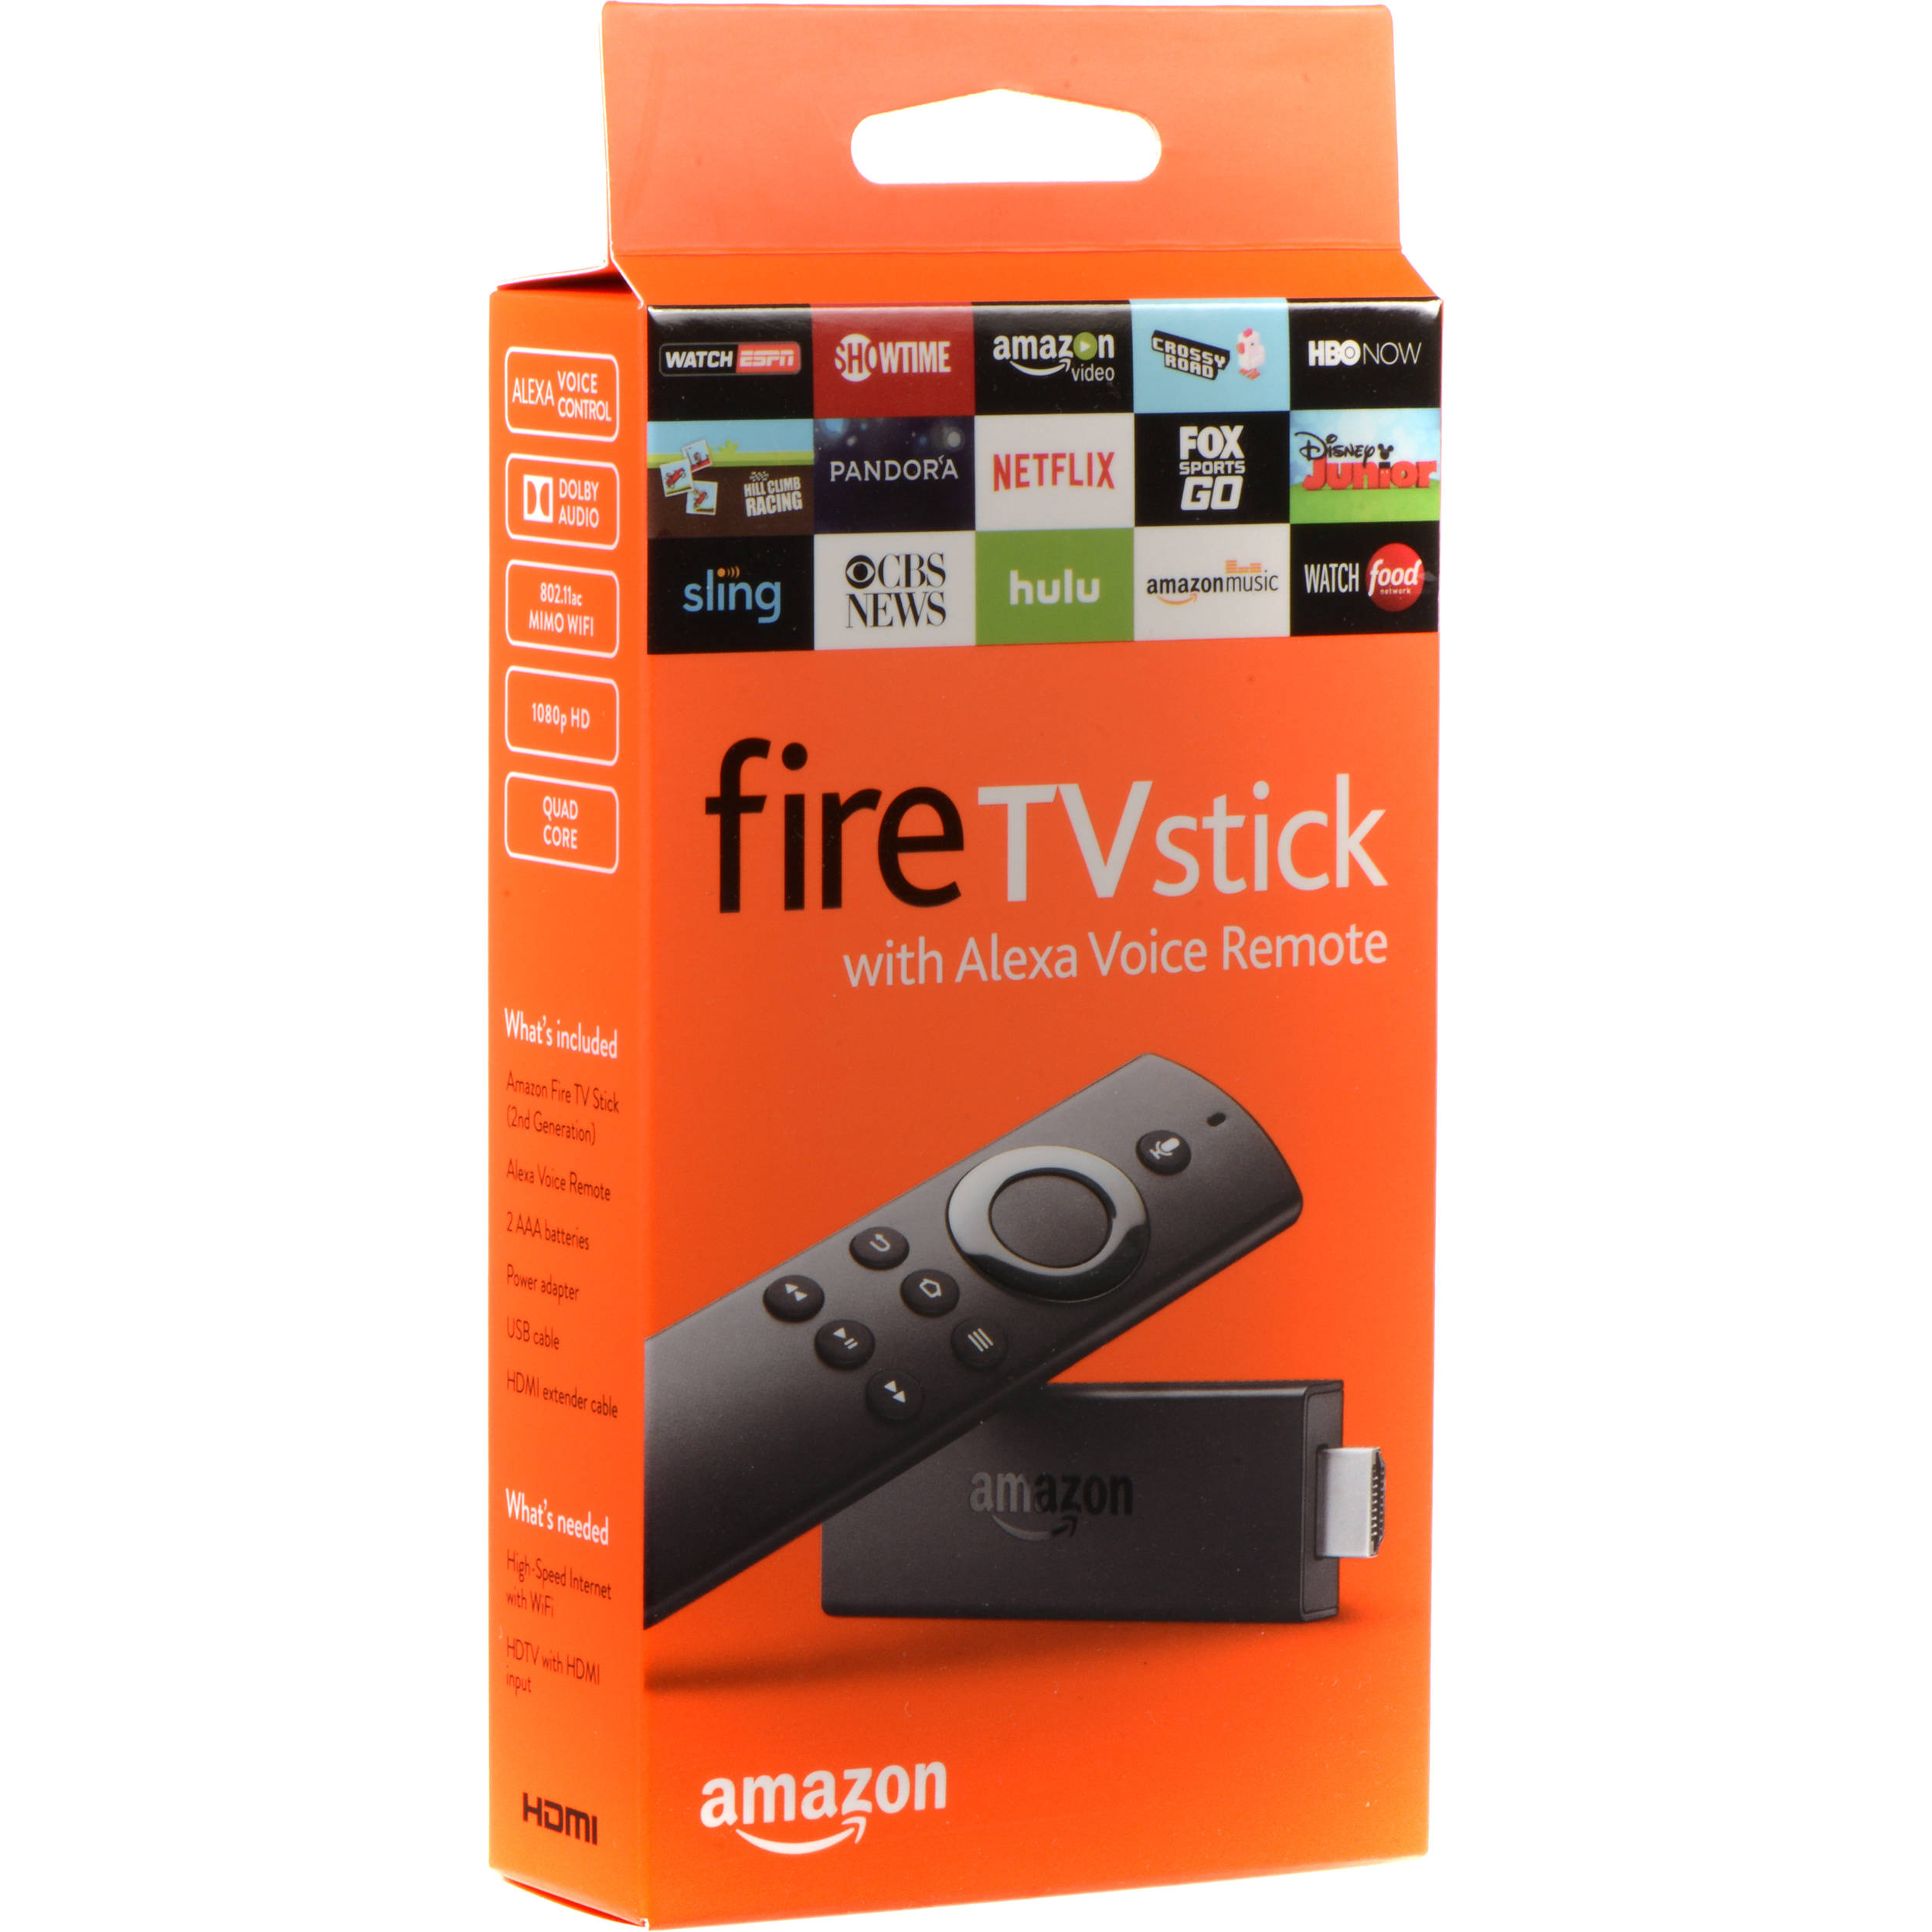 amazon fire stick remote app